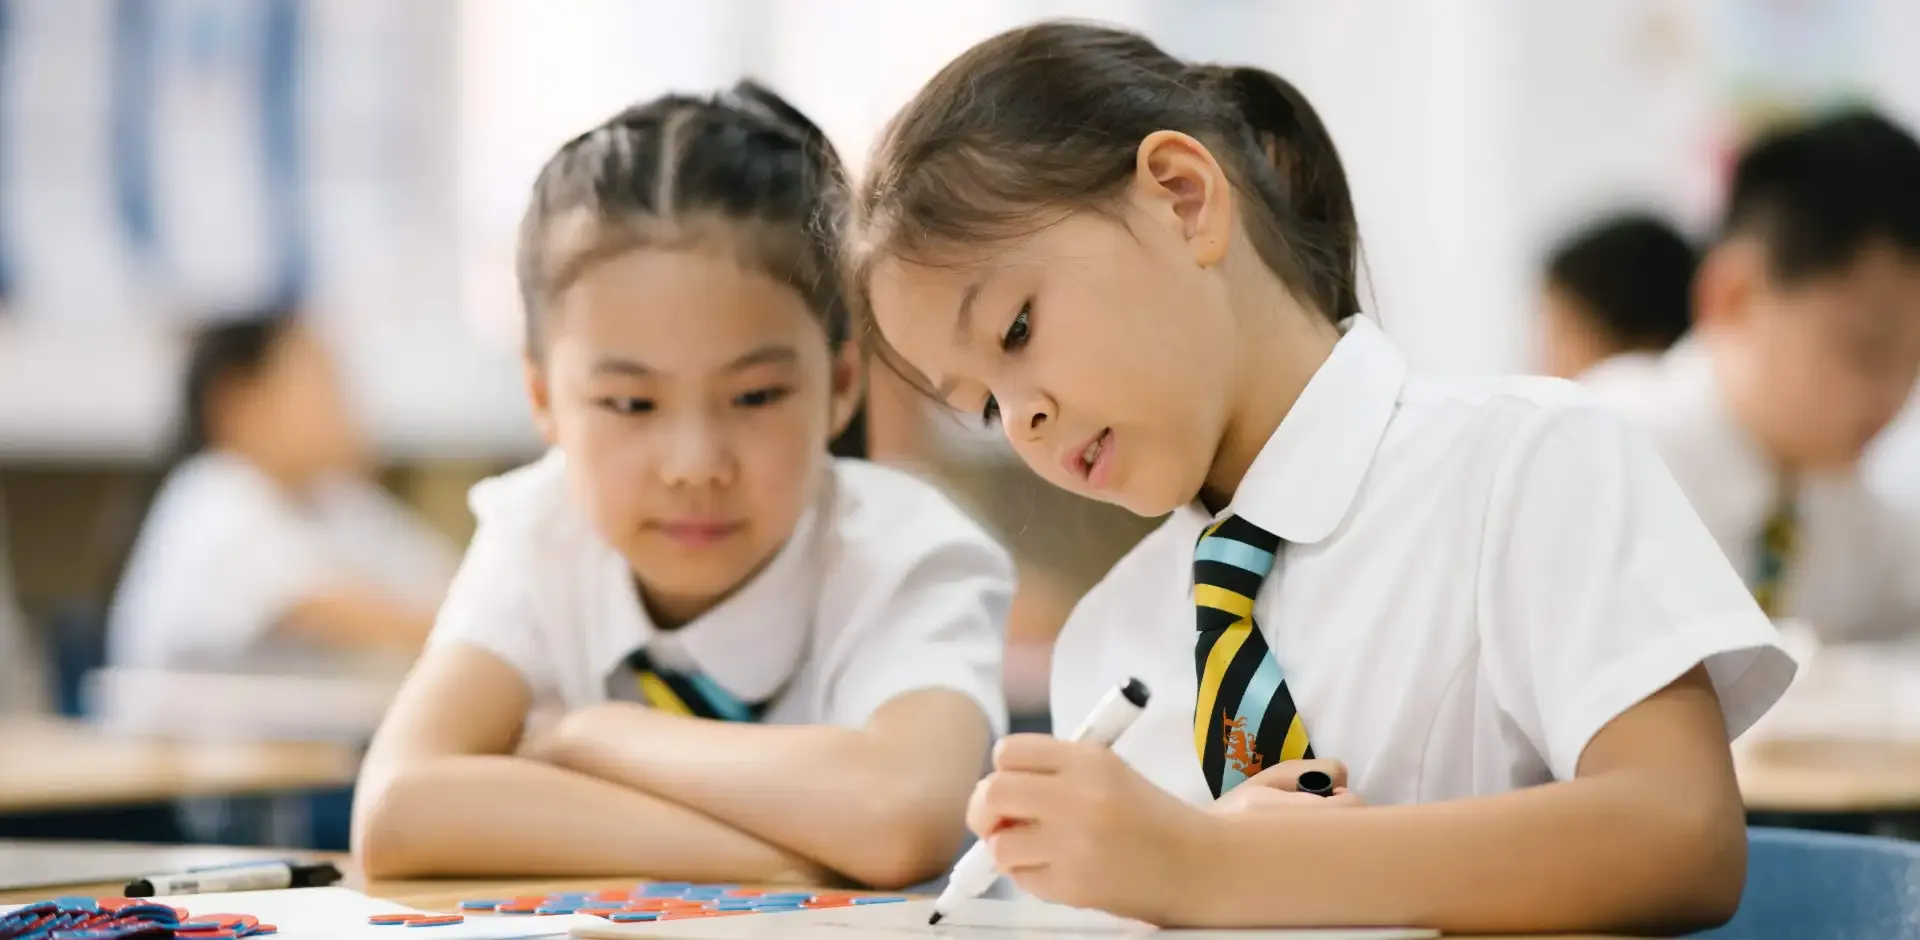 上海惠灵顿国际幼儿园|国际小学|国际中学|国际高中招生简章